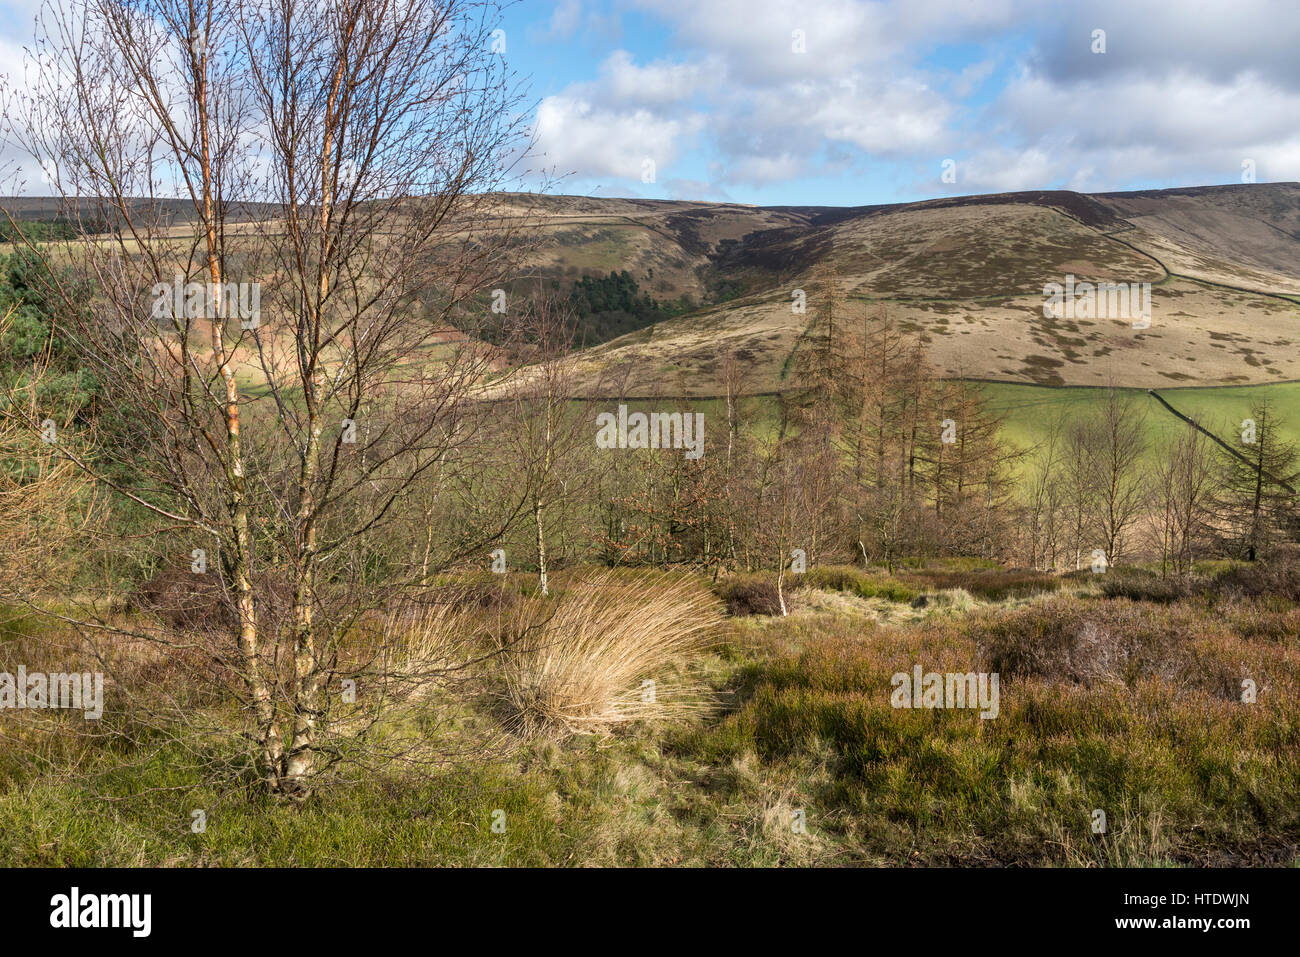 Schöne Aussicht vom Shire Hill in der Nähe von Glossop. Zeitigen Frühjahr Landschaft am Rande der Pennines im Norden Englands. Stockfoto